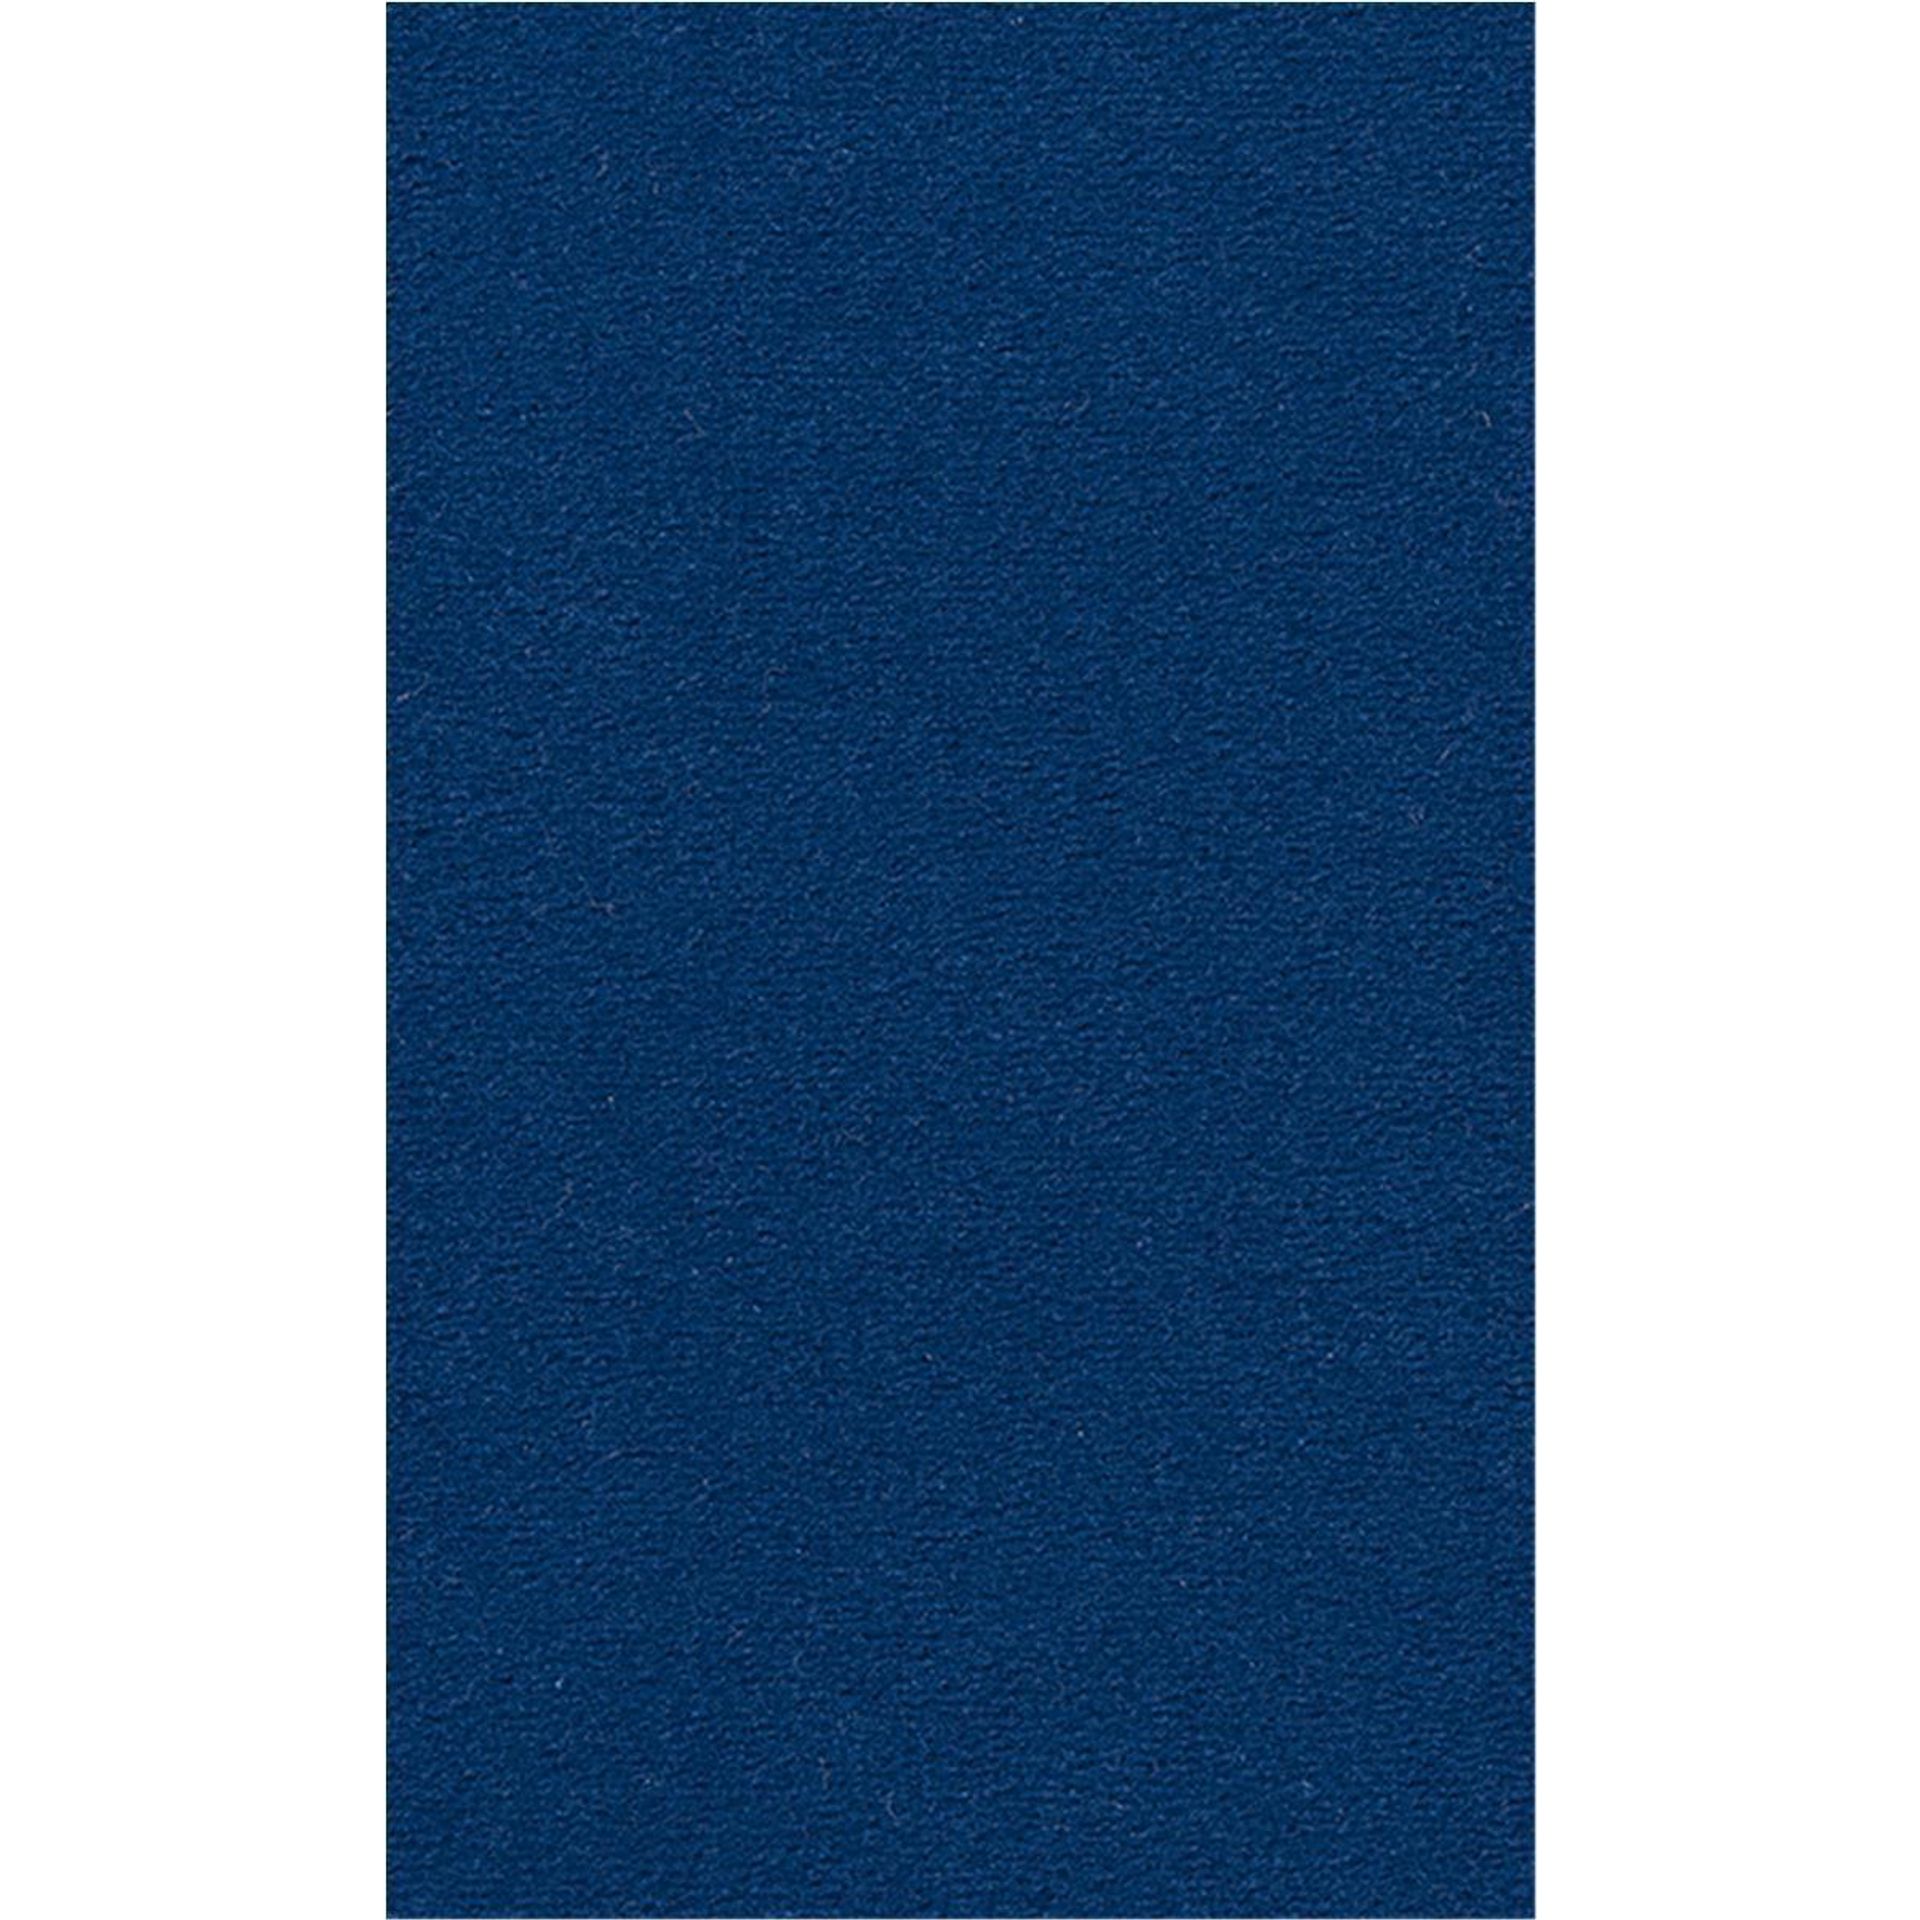 Teppichboden Vorwerk Passion 1000 MODENA Velours Blau 3N56 - Rollenbreite 400 cm